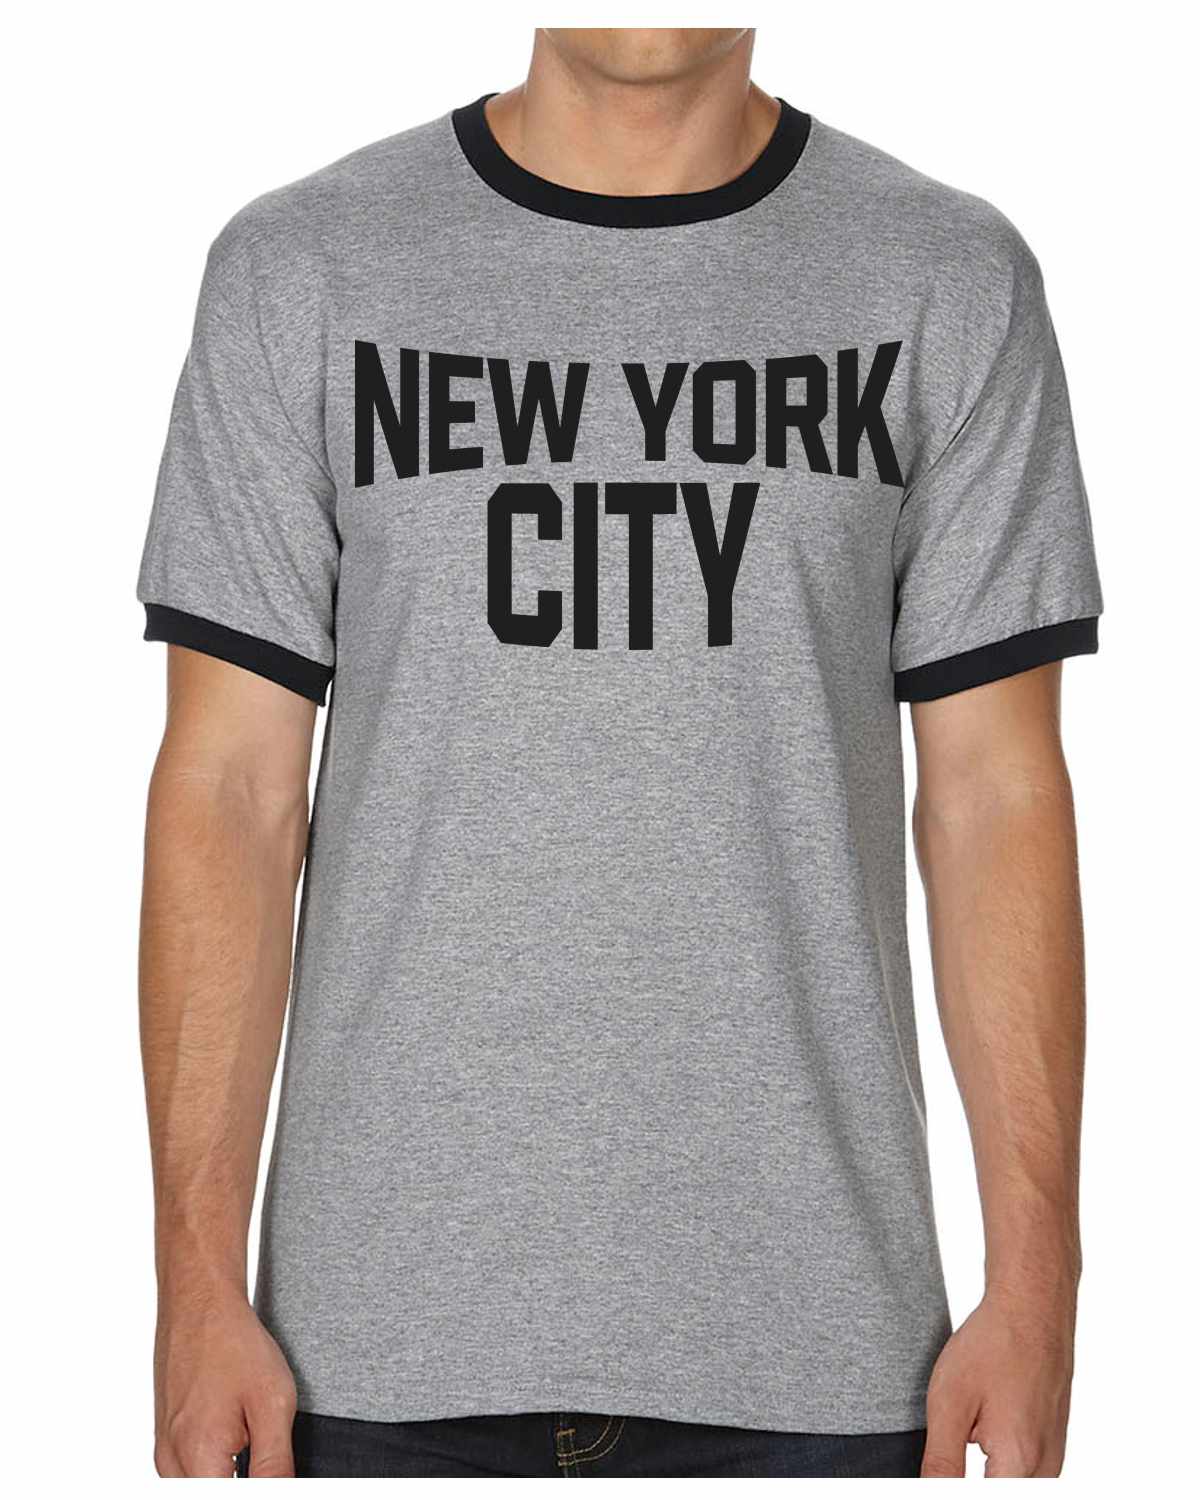 New York City on Ringer Shirt (#1194-8)